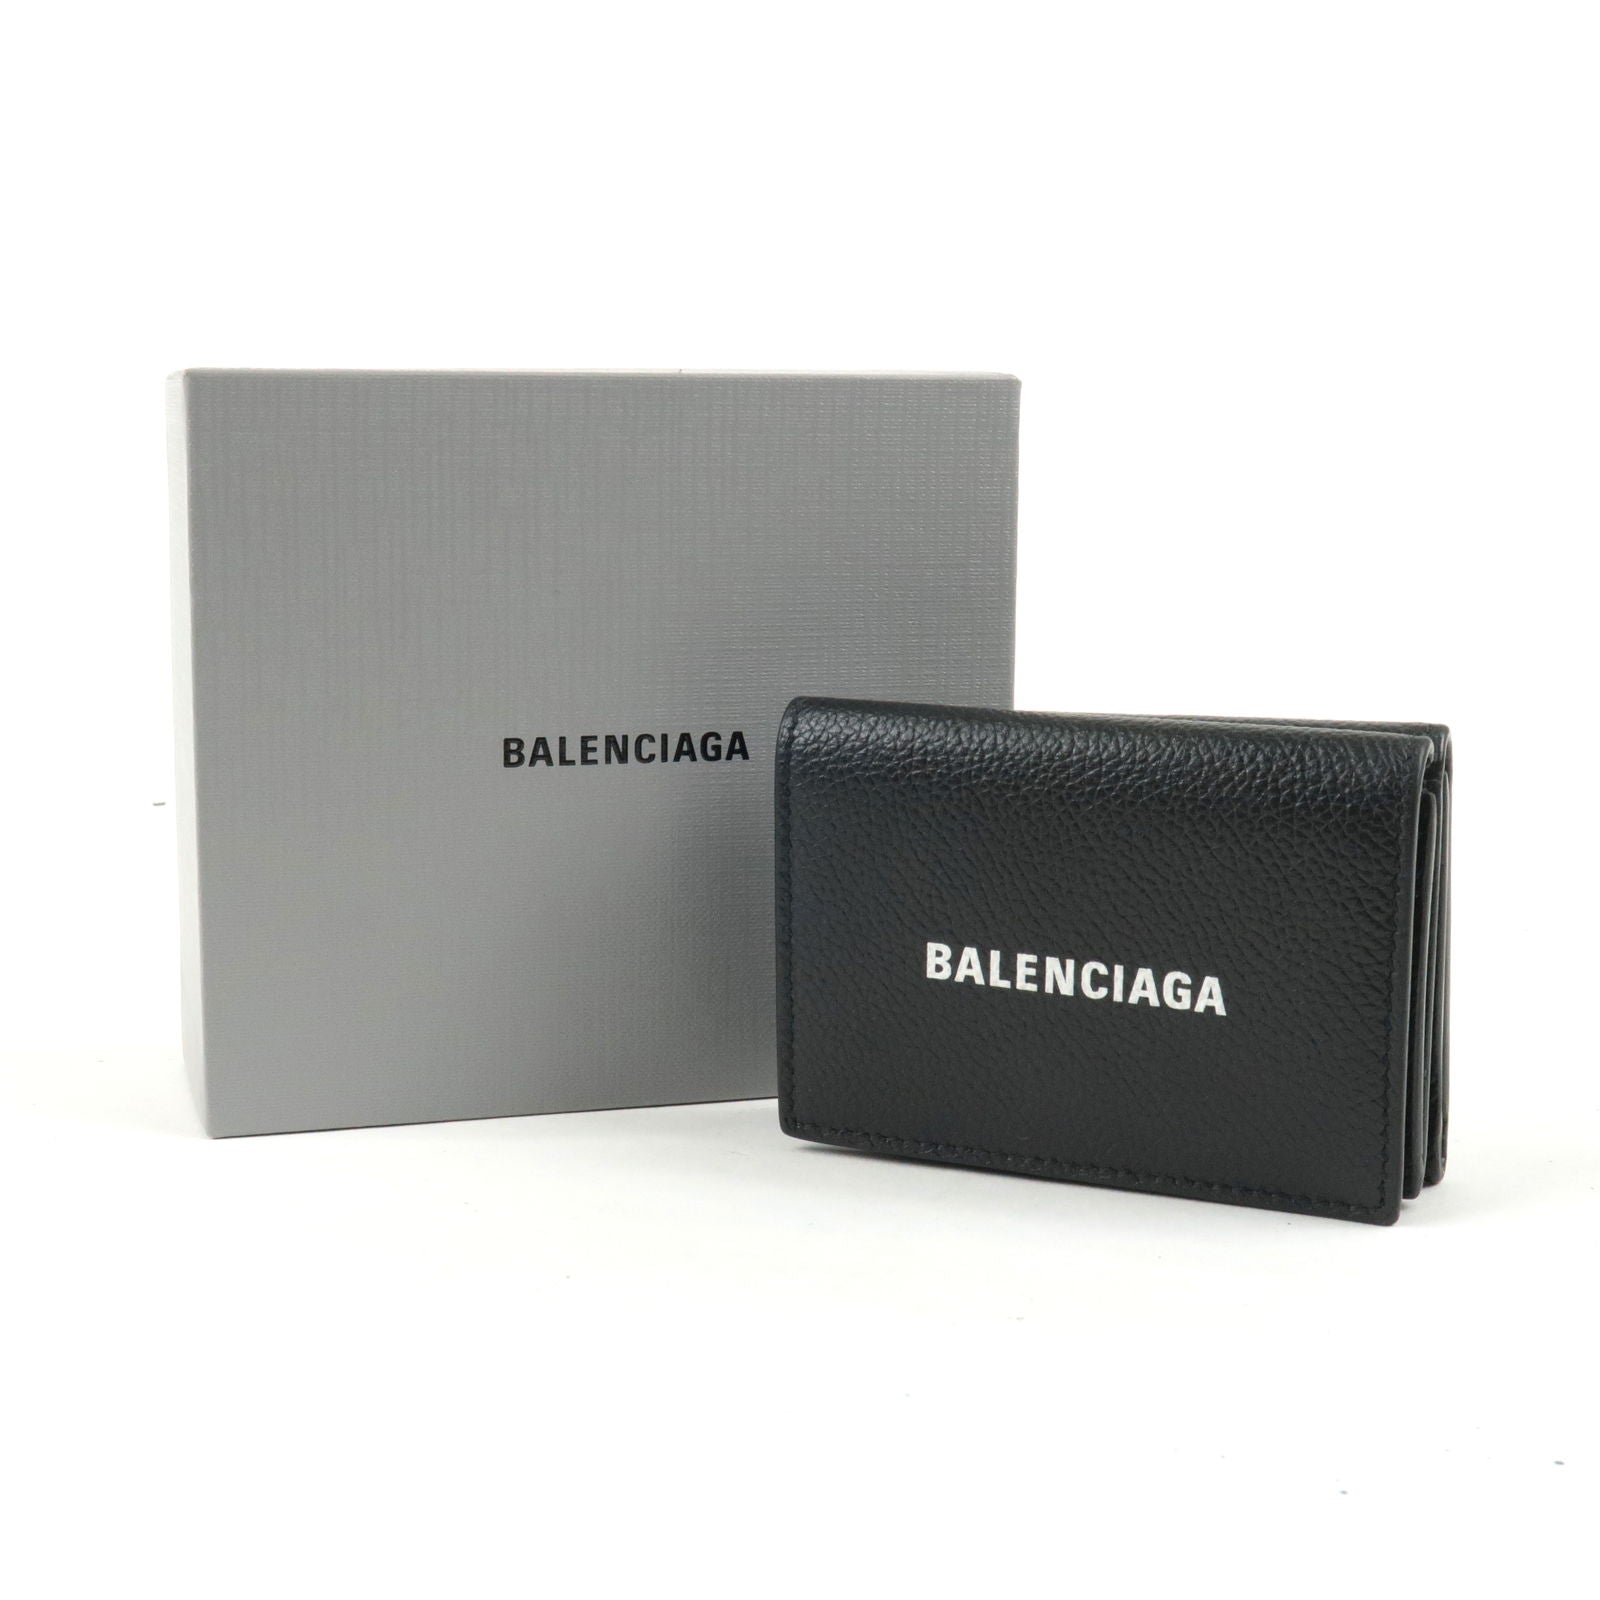 Luxury wallet - Balenciaga mini wallet in black leather with white logo